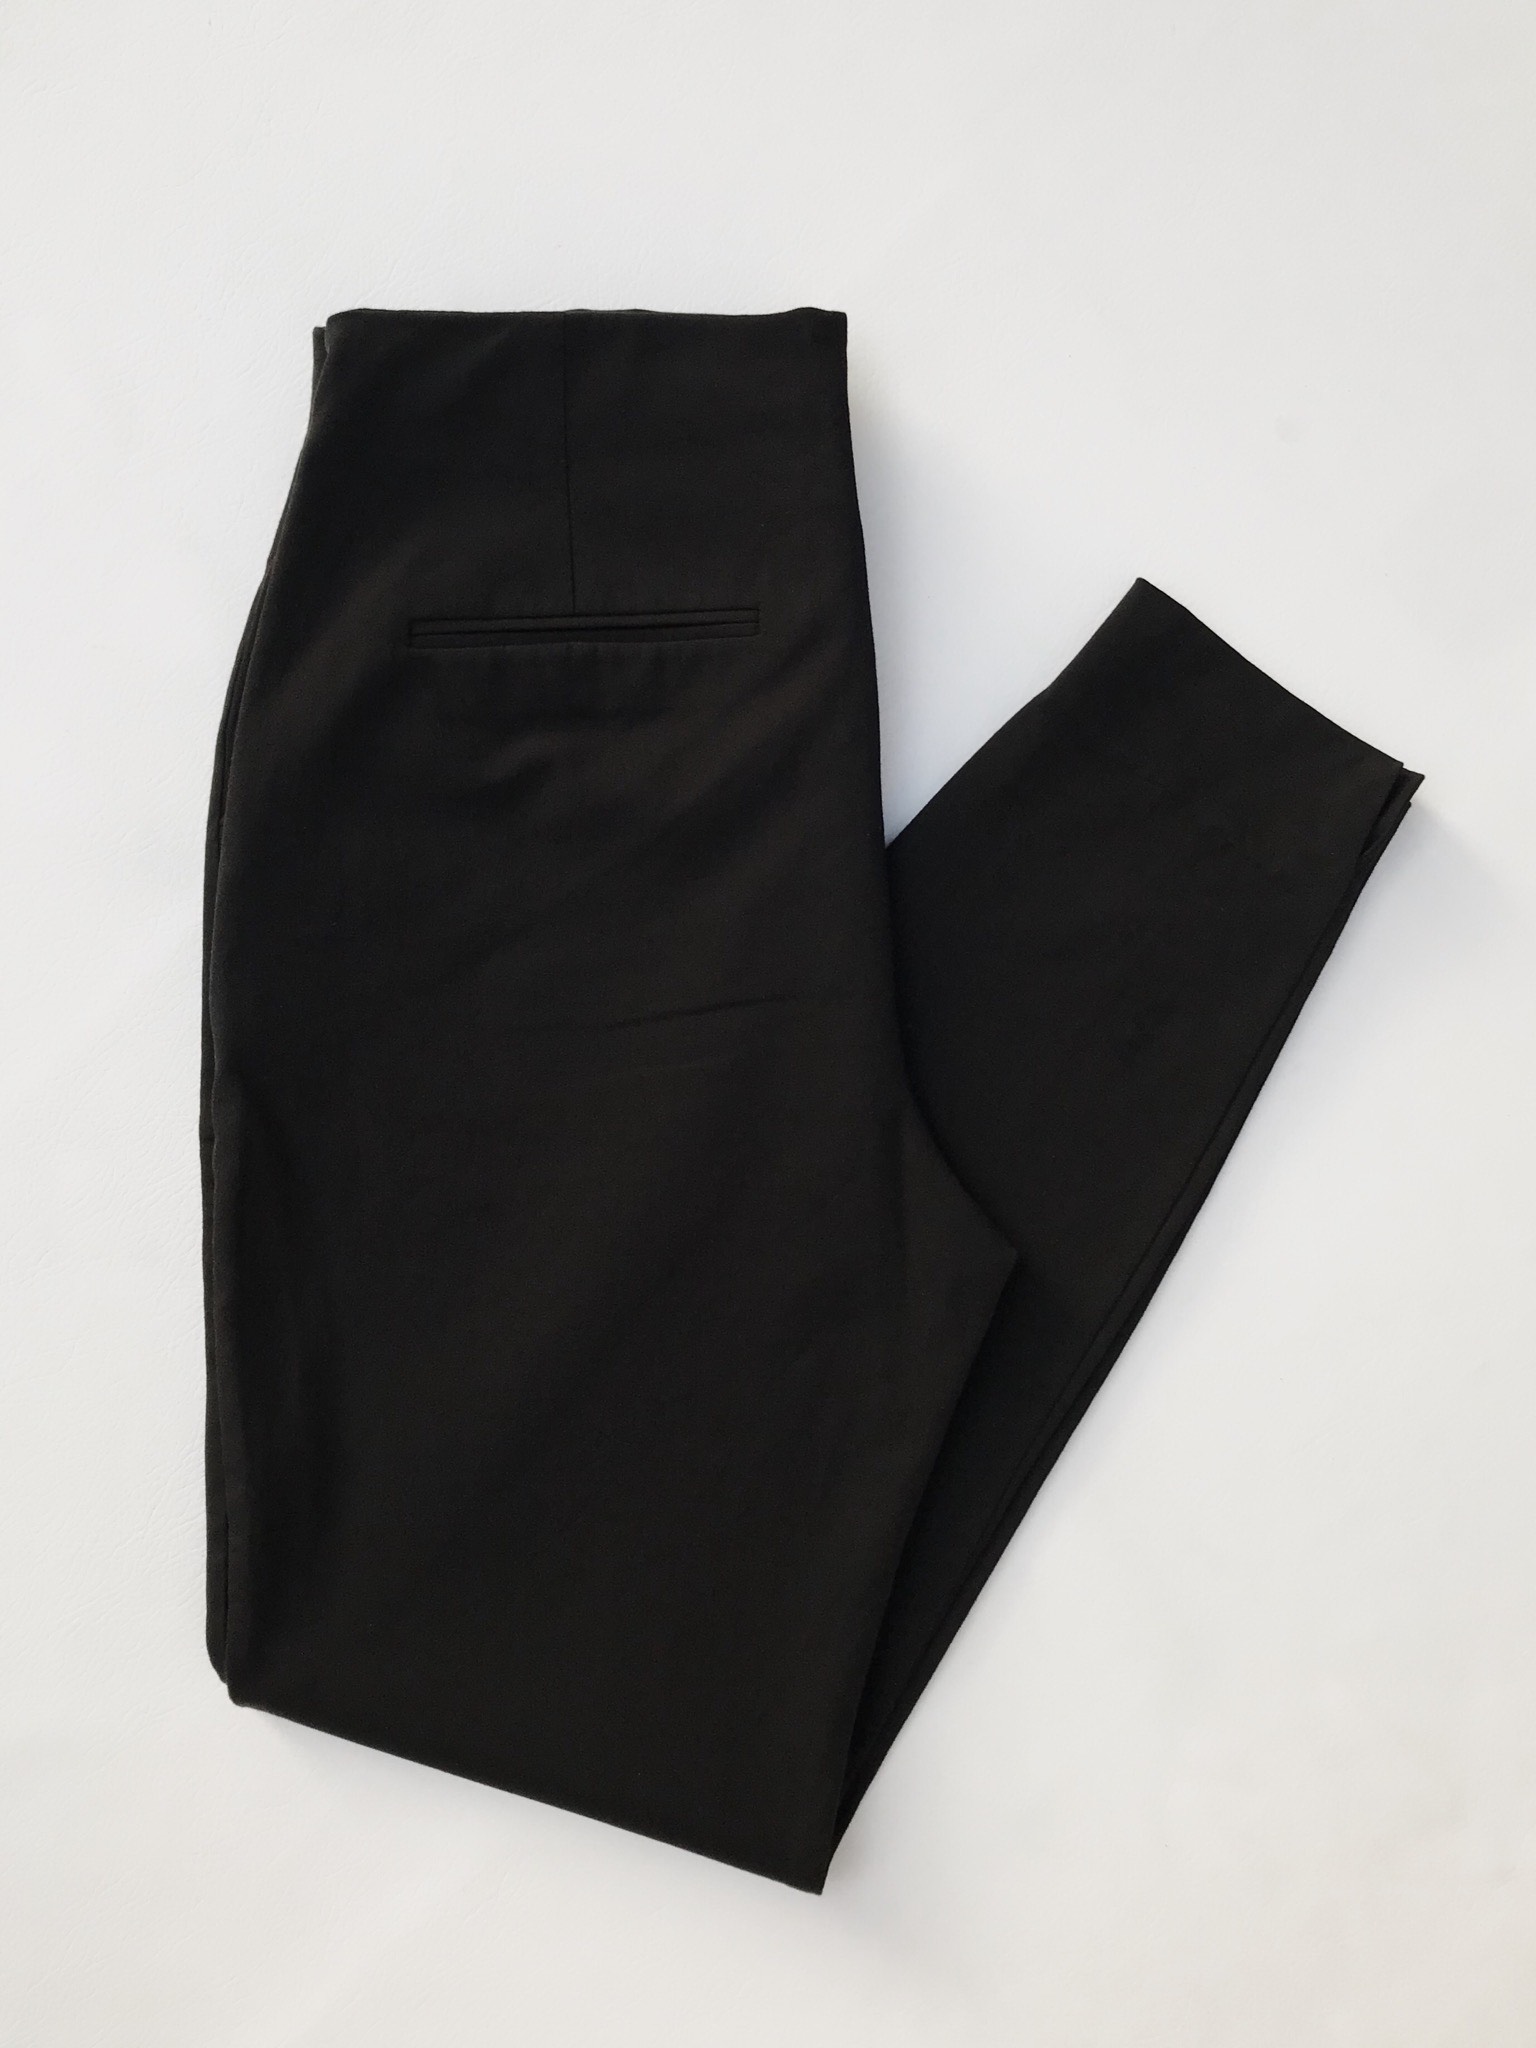 Pantalón Mango negro stretch, a la cintura, cierre lateral, ojales y dos botones, corte pitillo. Precio original S/180
Talla 34 (L / USA12)